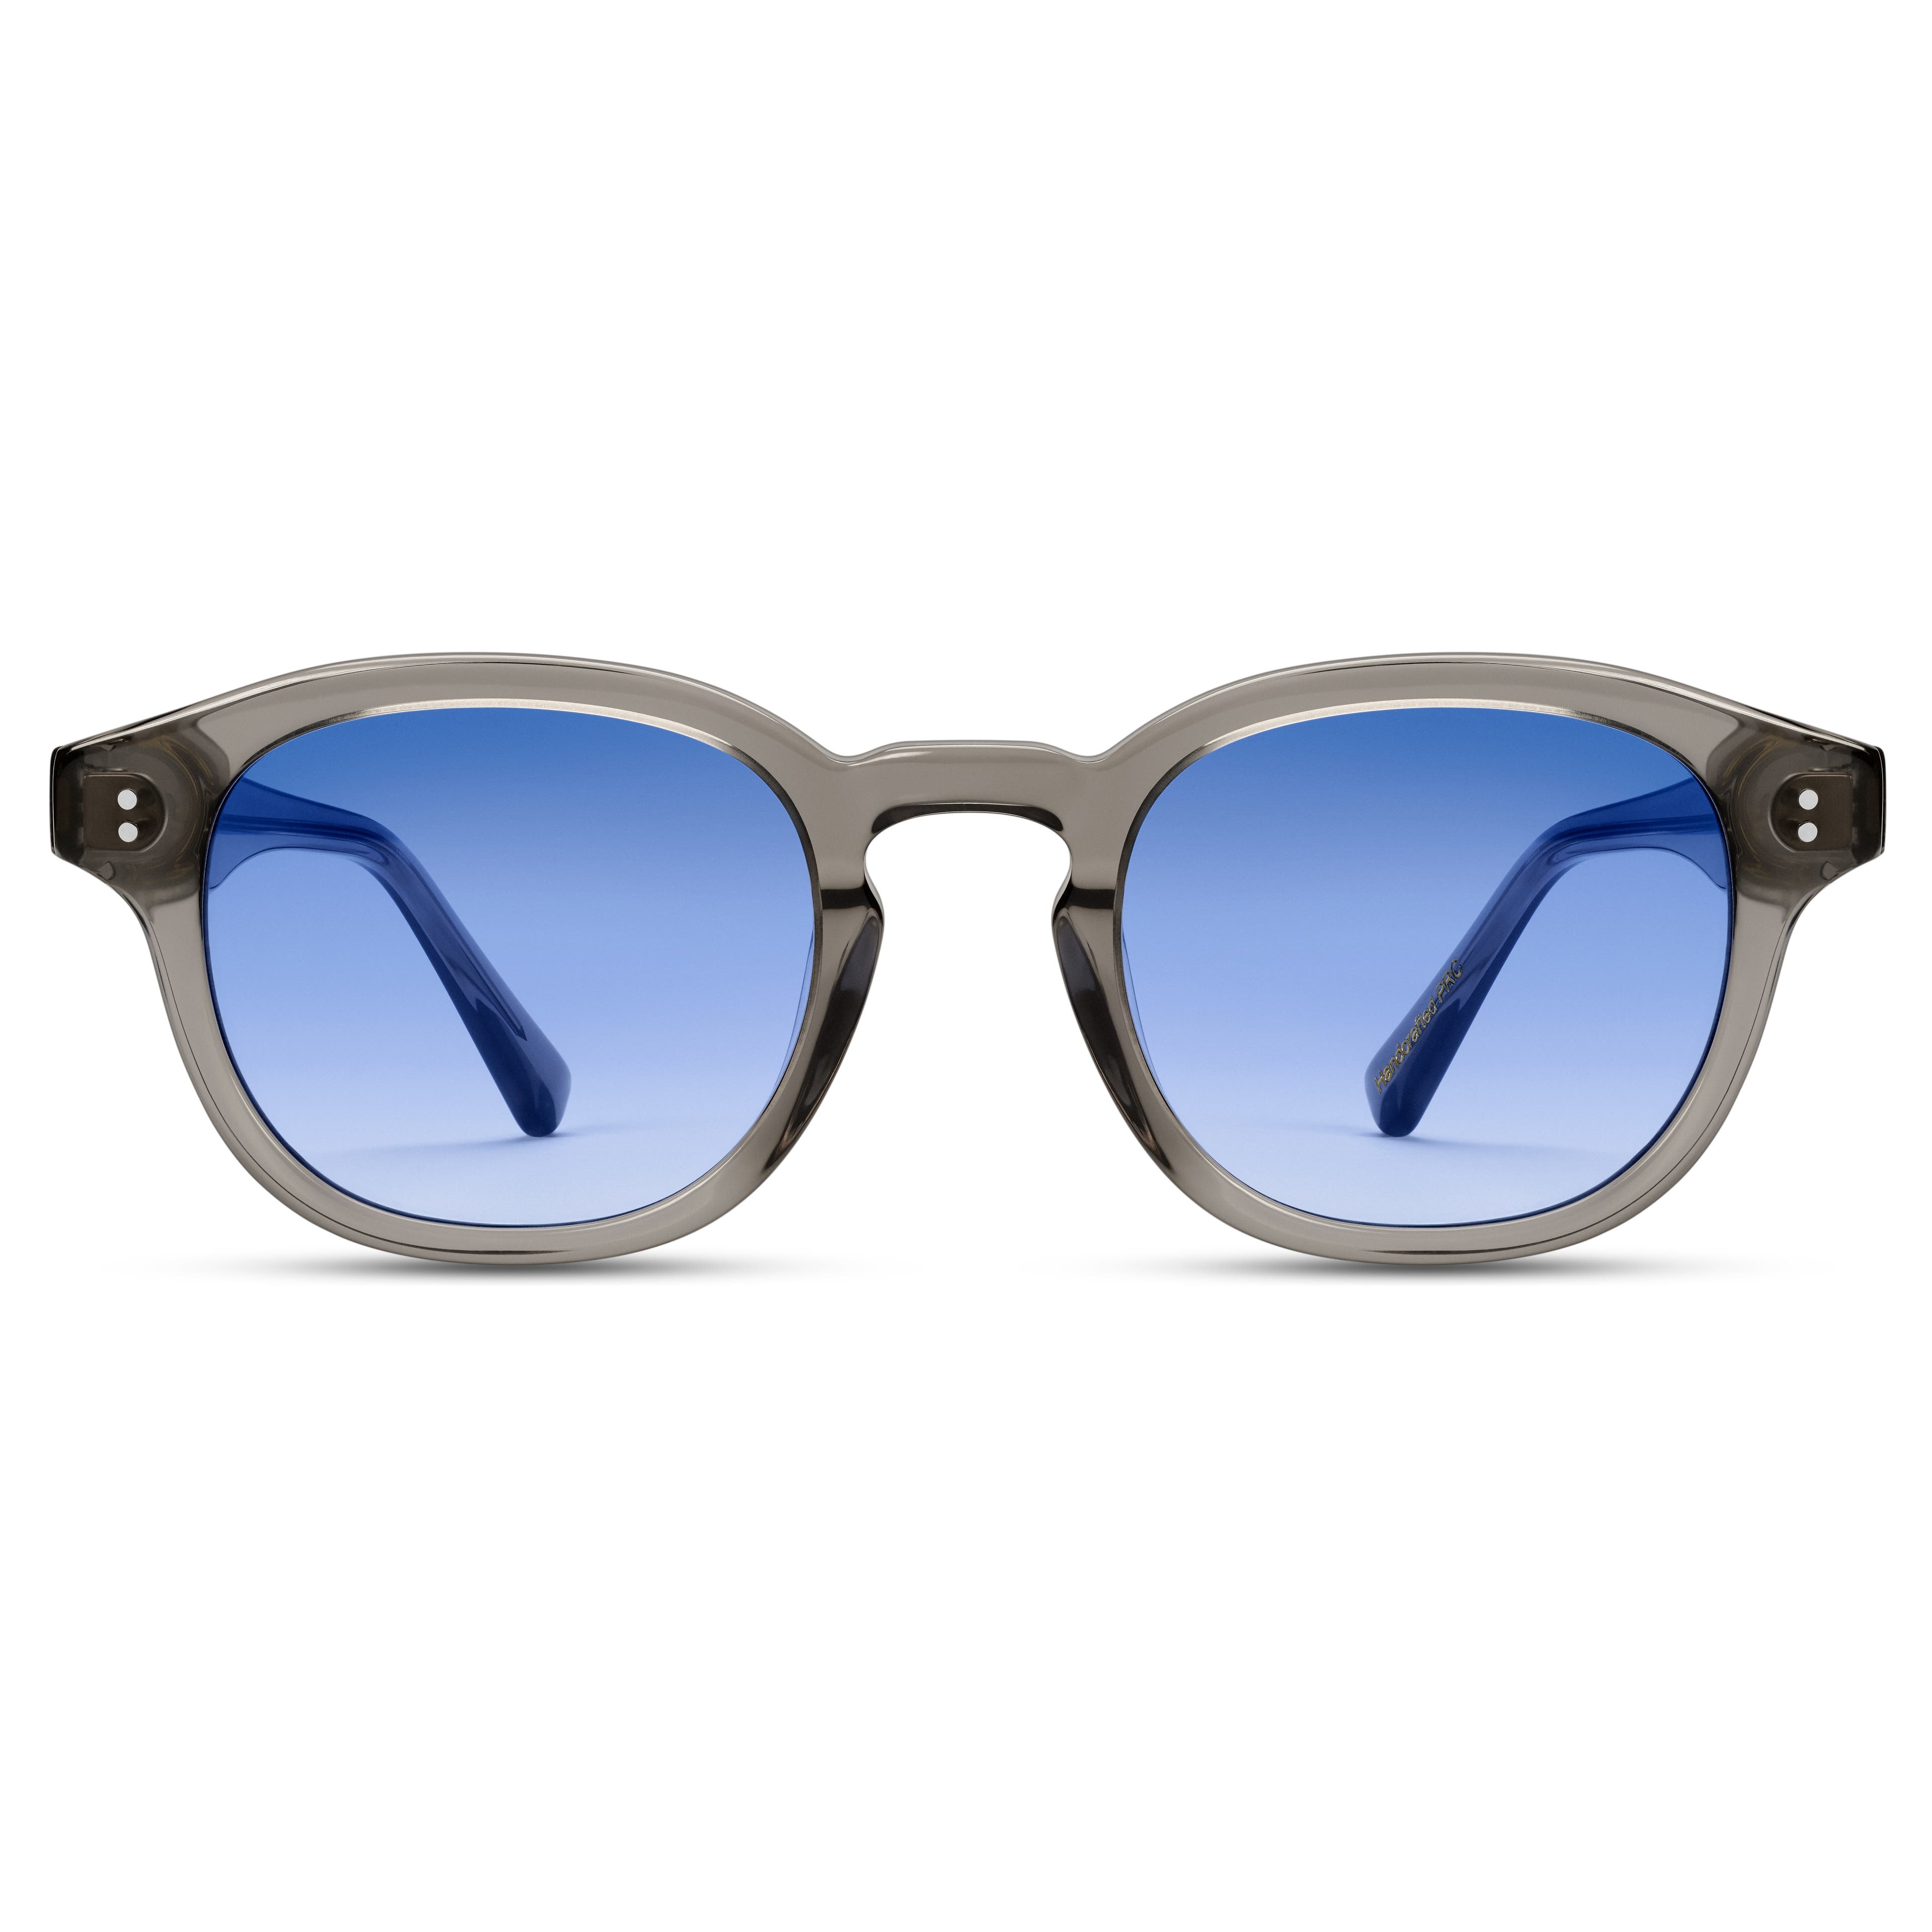 Kwadratowe szare okulary przeciwsłoneczne Bille w oprawkach typu horn rimmed